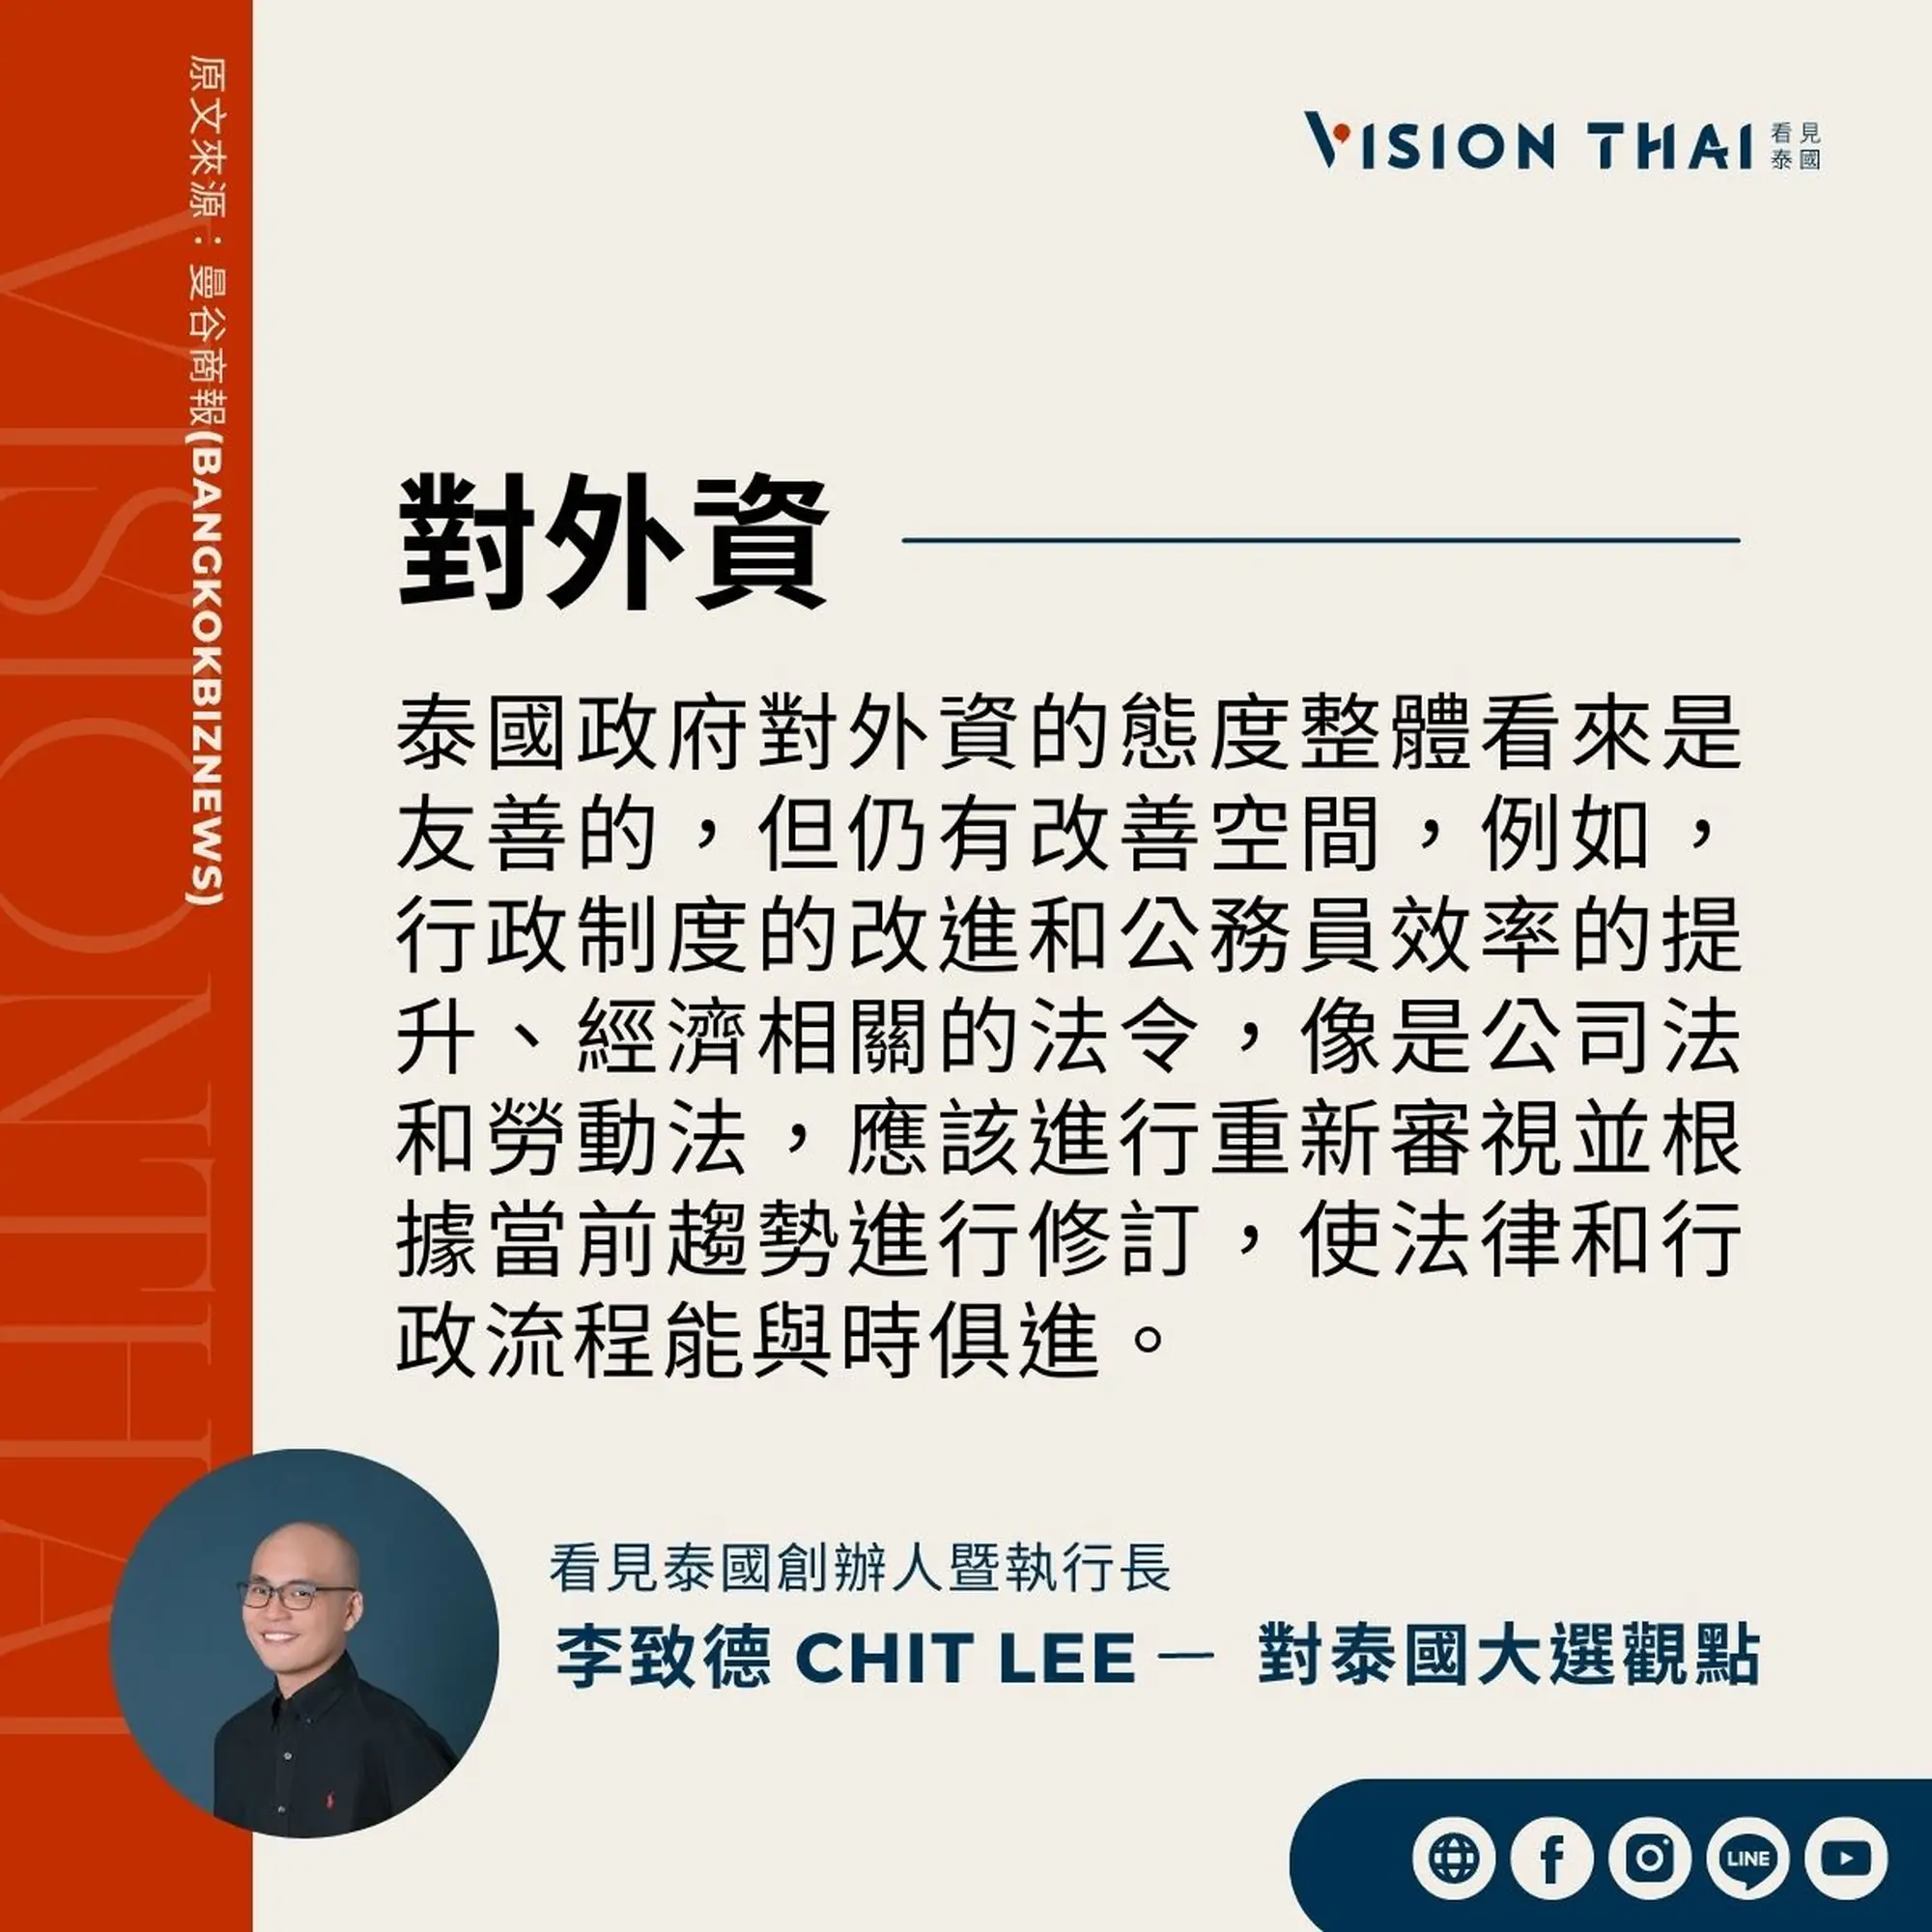 《曼谷商報》採訪Vision Thai 看見泰國媒體創辦人暨執行長李致德(Chit Lee)對外資的期許（來源：看見泰國製圖）